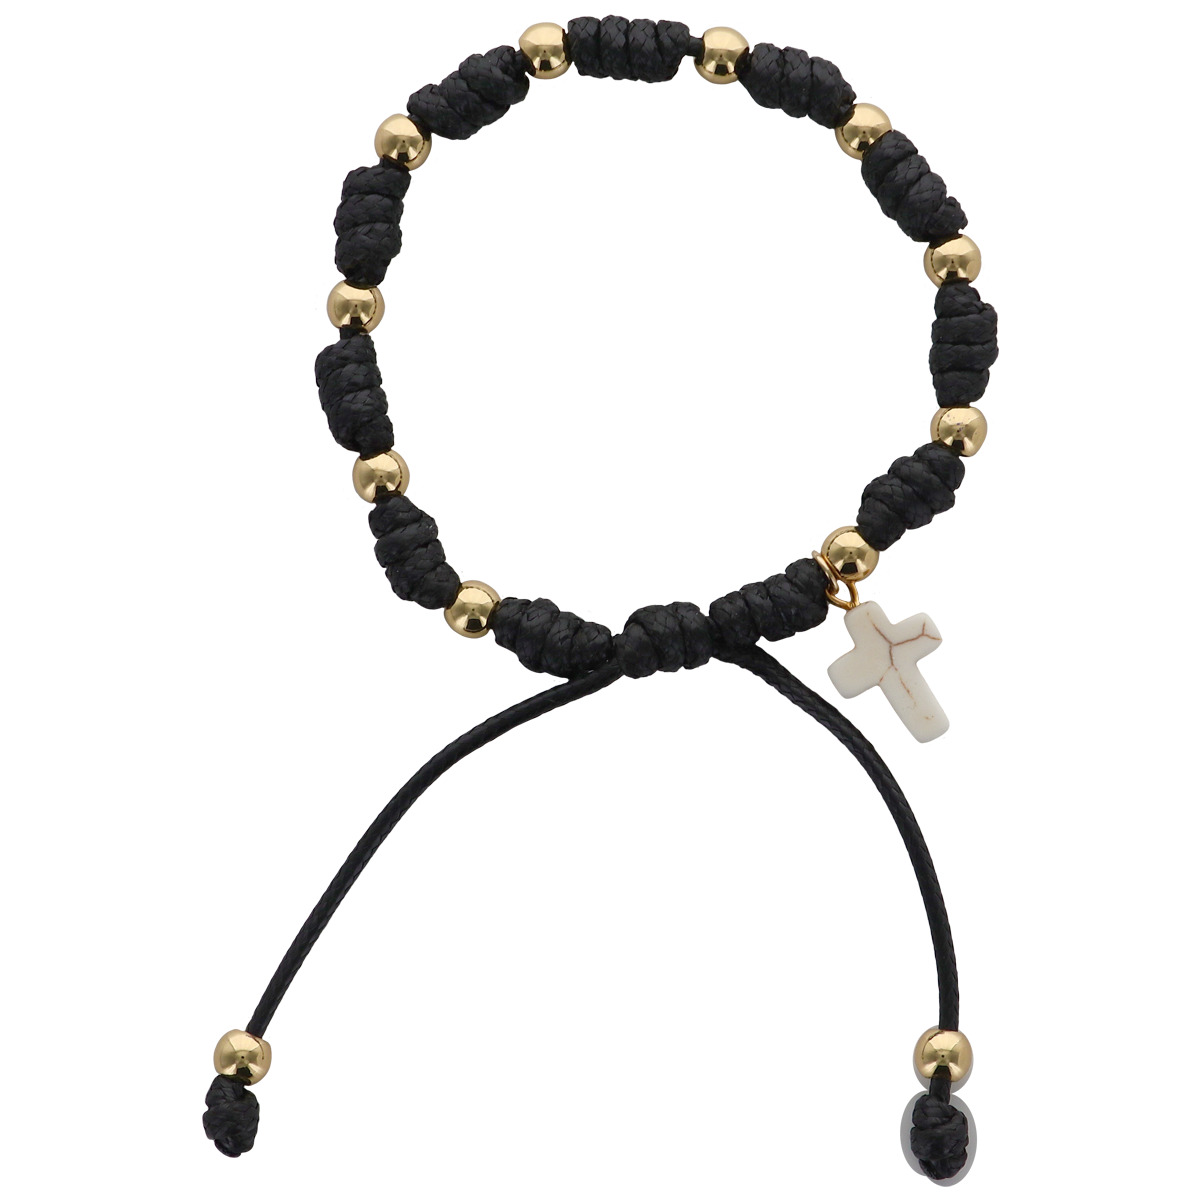 Bracelet dizainier sur corde réglable, grains de couleurs dorés Ø 5 mm et croix. Existe en différentes couleurs.